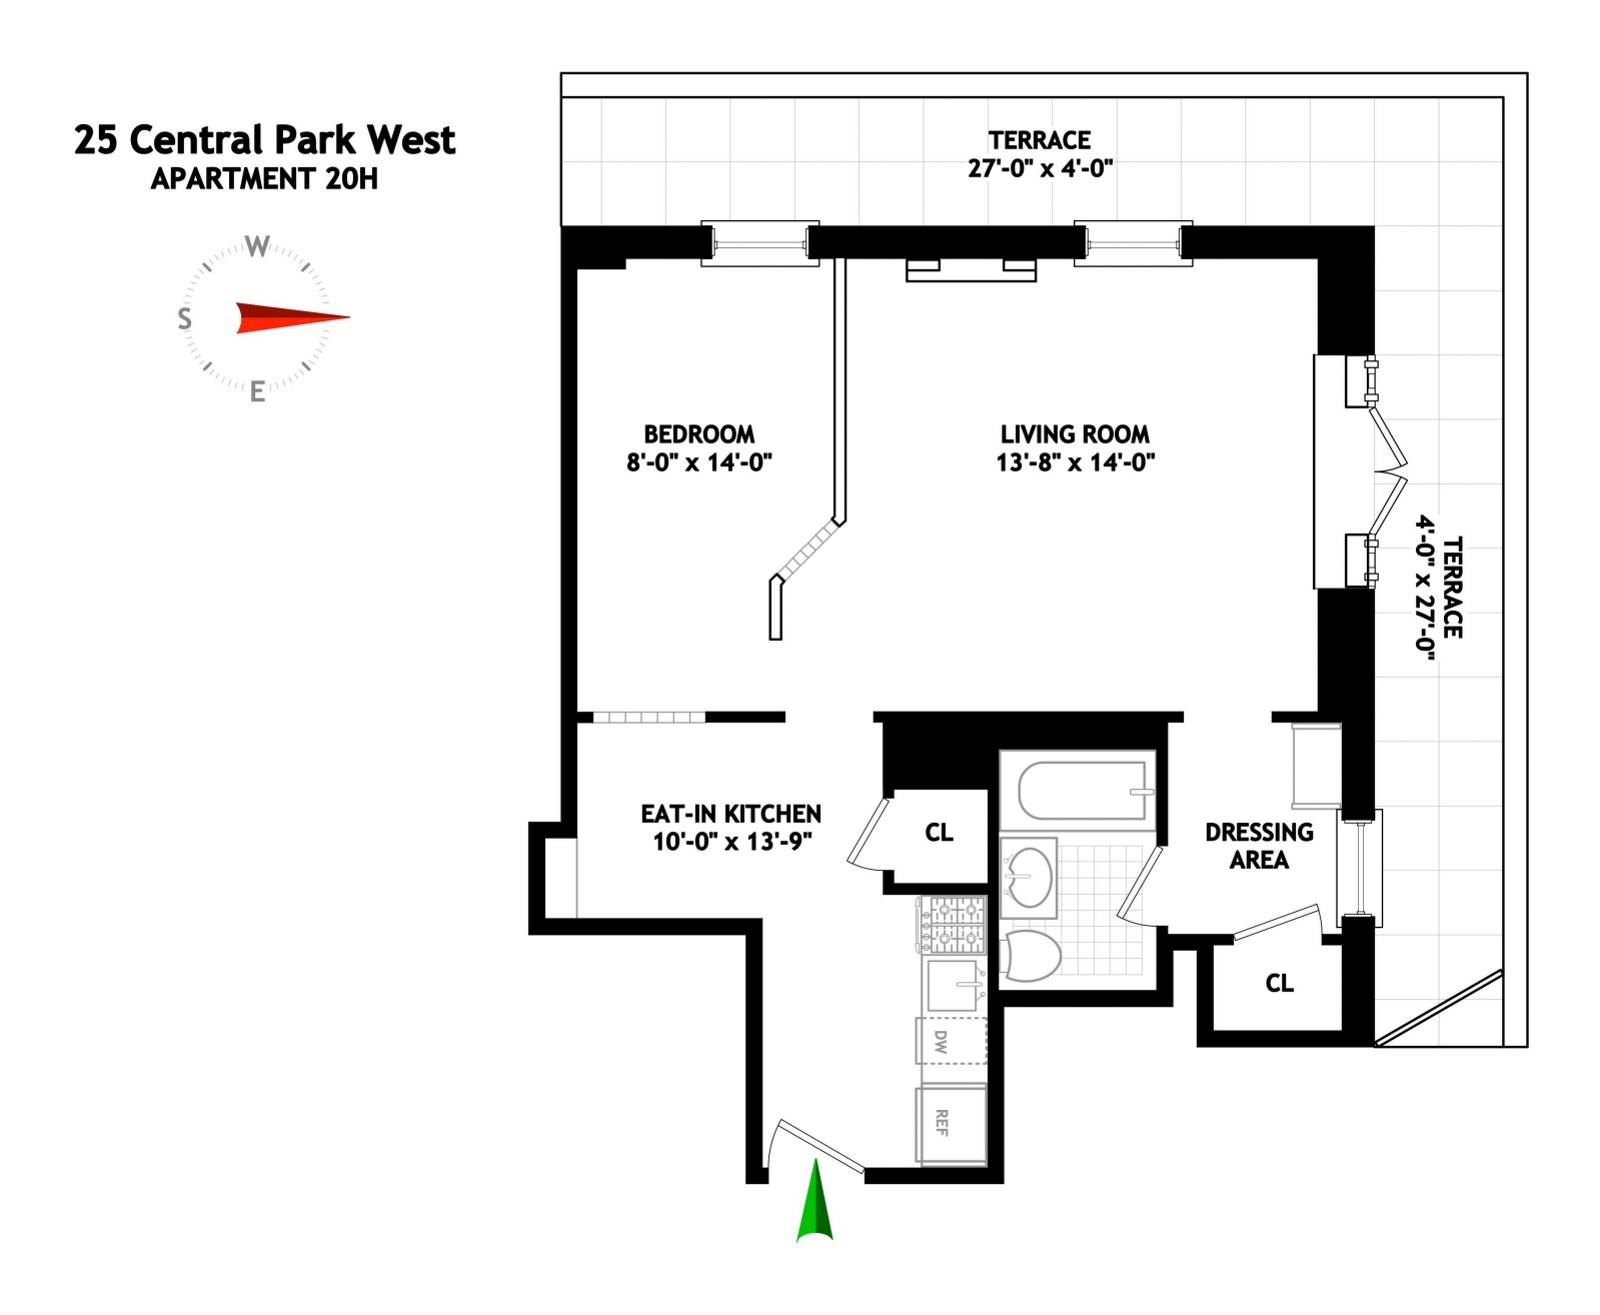 Floorplan for 25 Central Park West, 20H